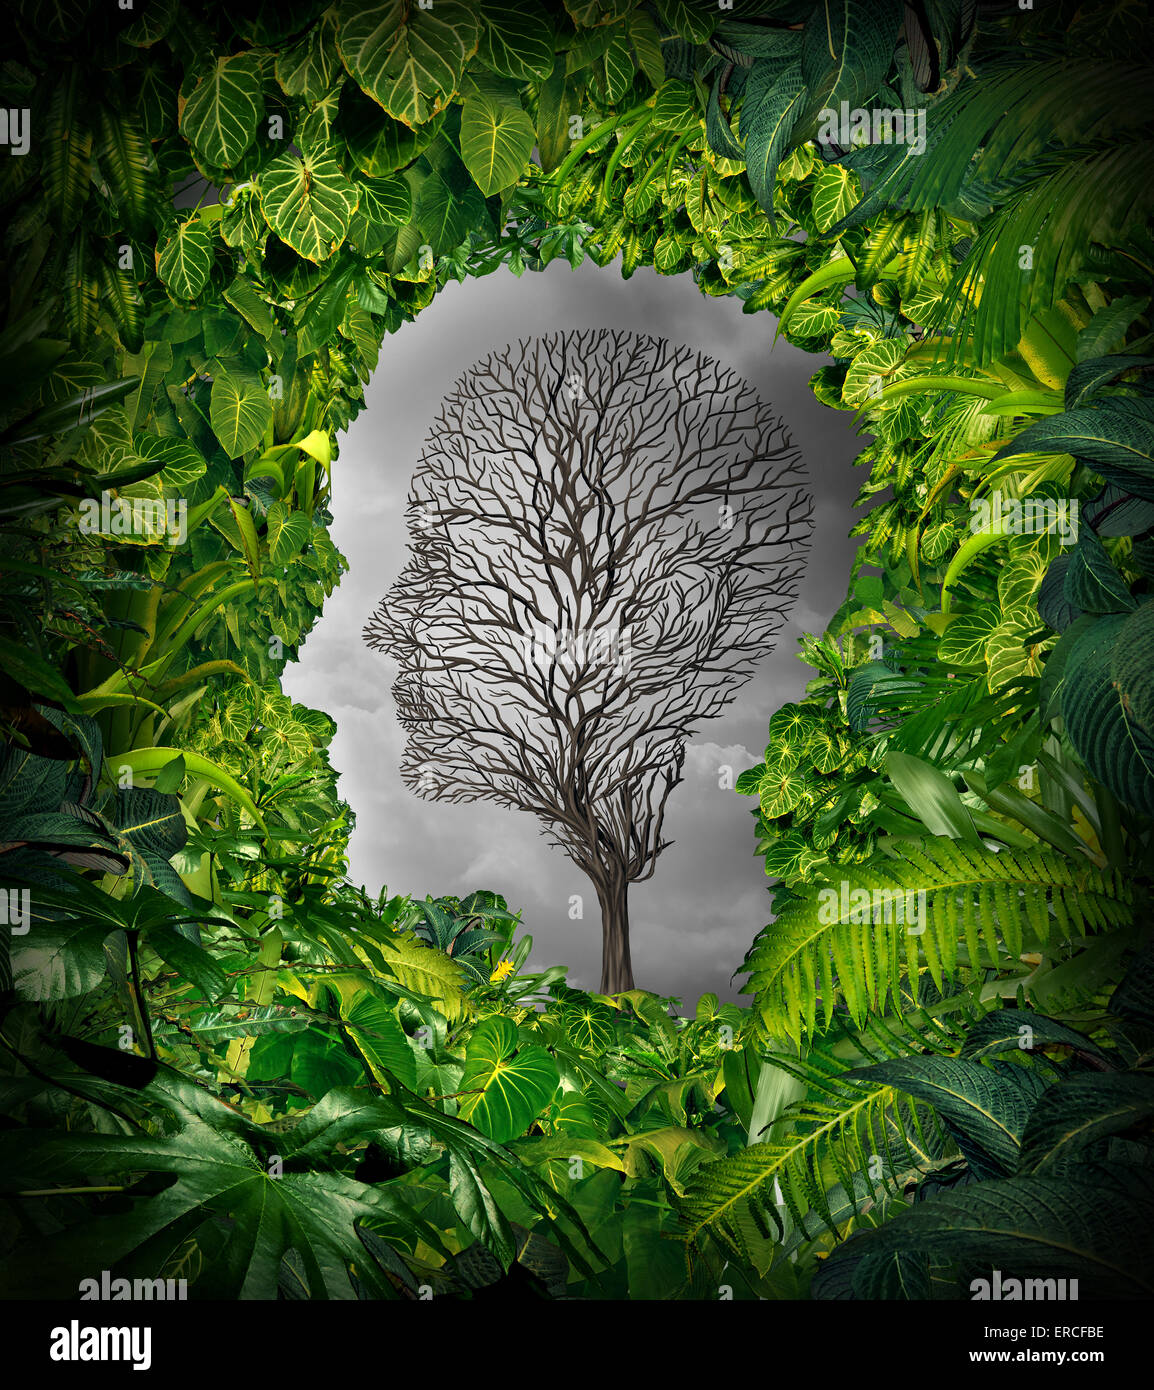 All'interno del concetto di depressione e sentimenti interiori di angoscia come una salute mentale simbolo con una sana pianta verde giungla a forma di finestra come una testa umana e un albero morto come un volto sofferente per la psicologia di esame. Foto Stock